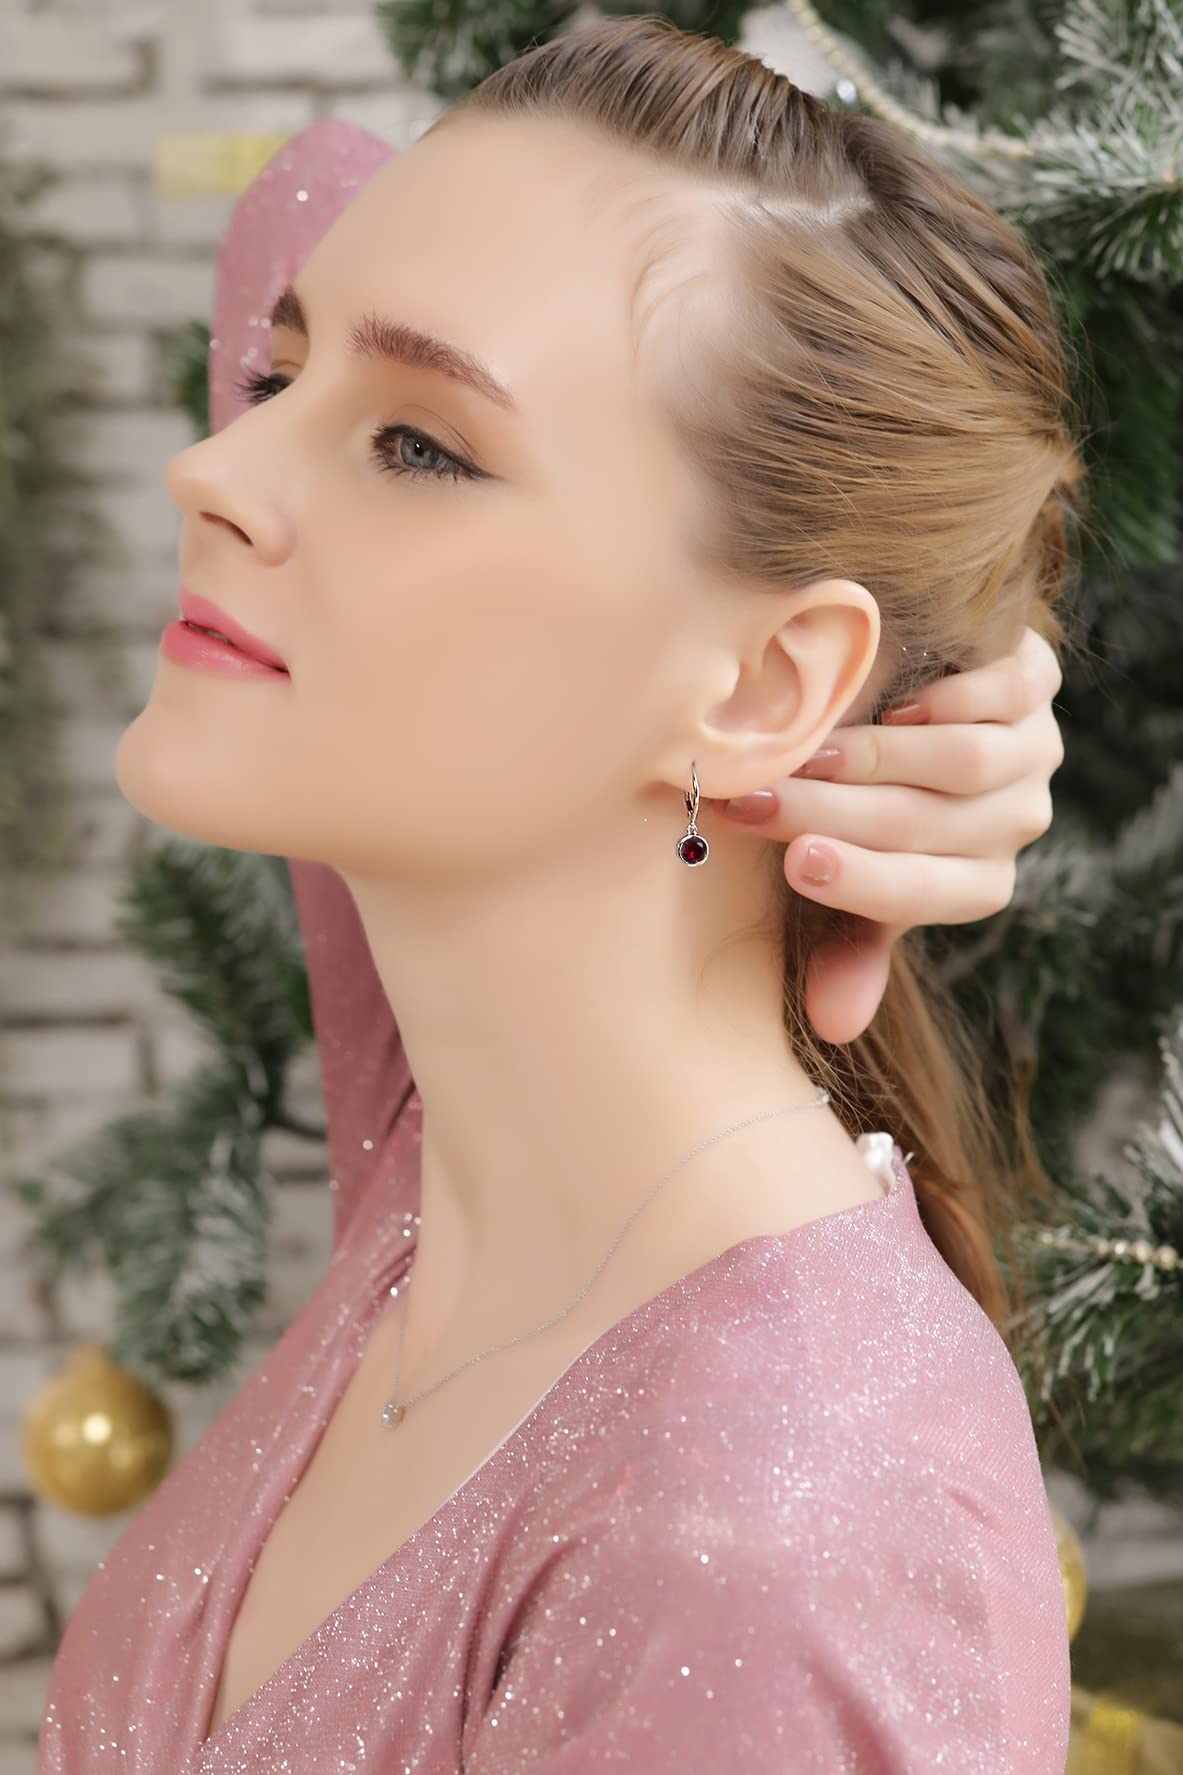 Earrings for Women, Birthstone Earrings, Genuine or Synthetic Gemstone Earrings, 6mm Round Bezel Set Leverbacks, Dangle Earrings for Women, Sterling Silver Earrings or Gold Flash Silver Earrings